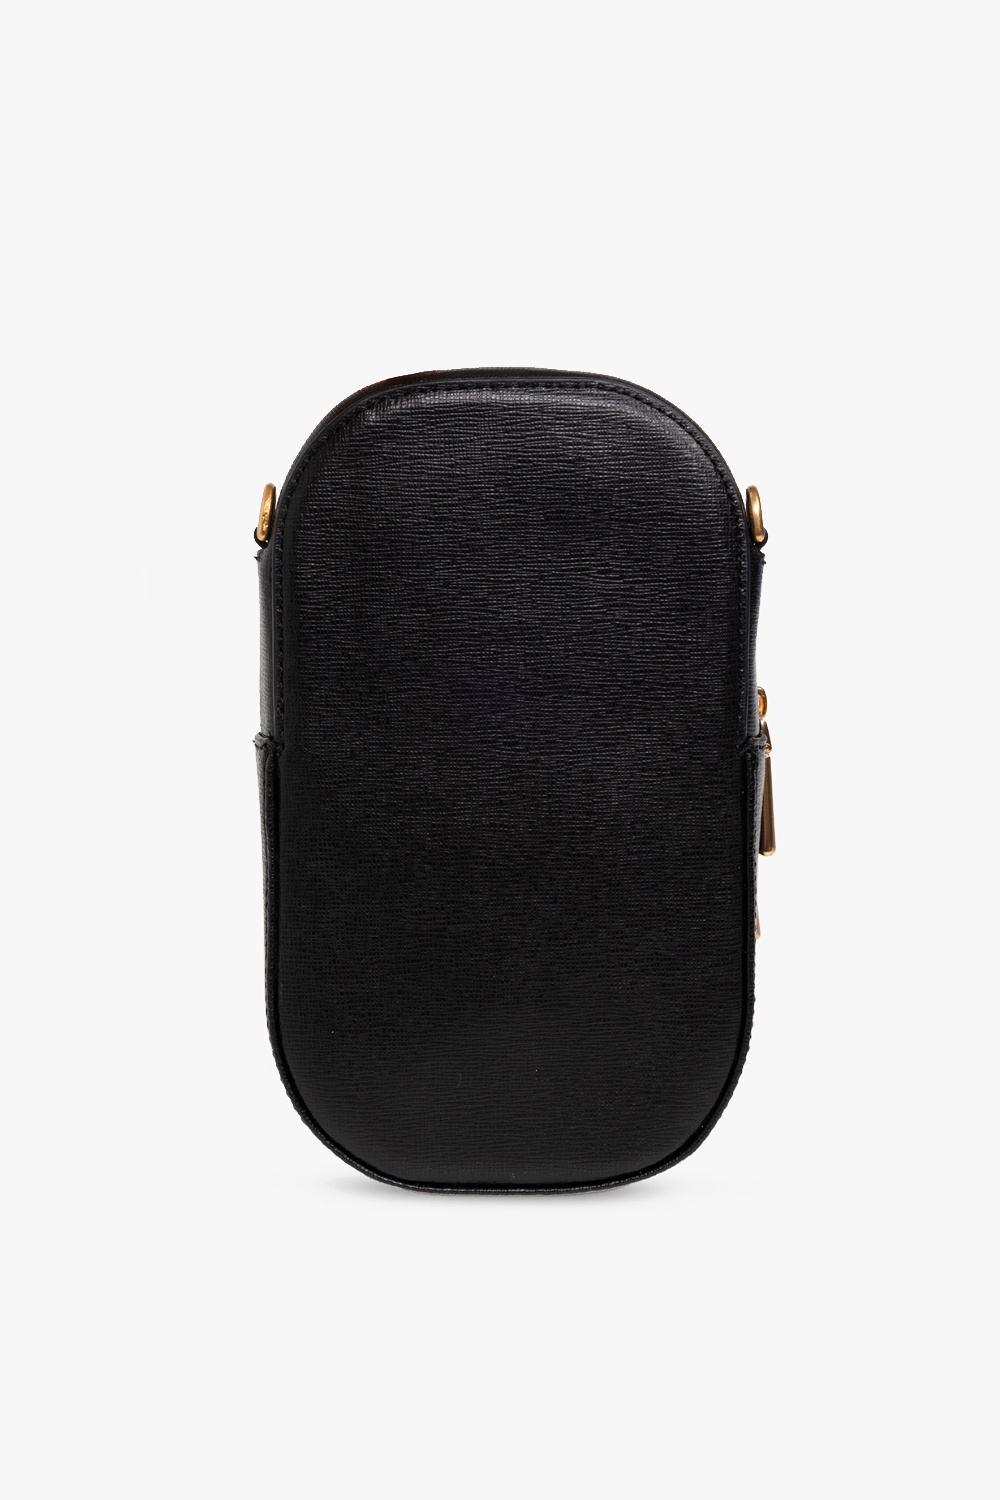 Kate Spade ‘Morgan’ leather shoulder bag